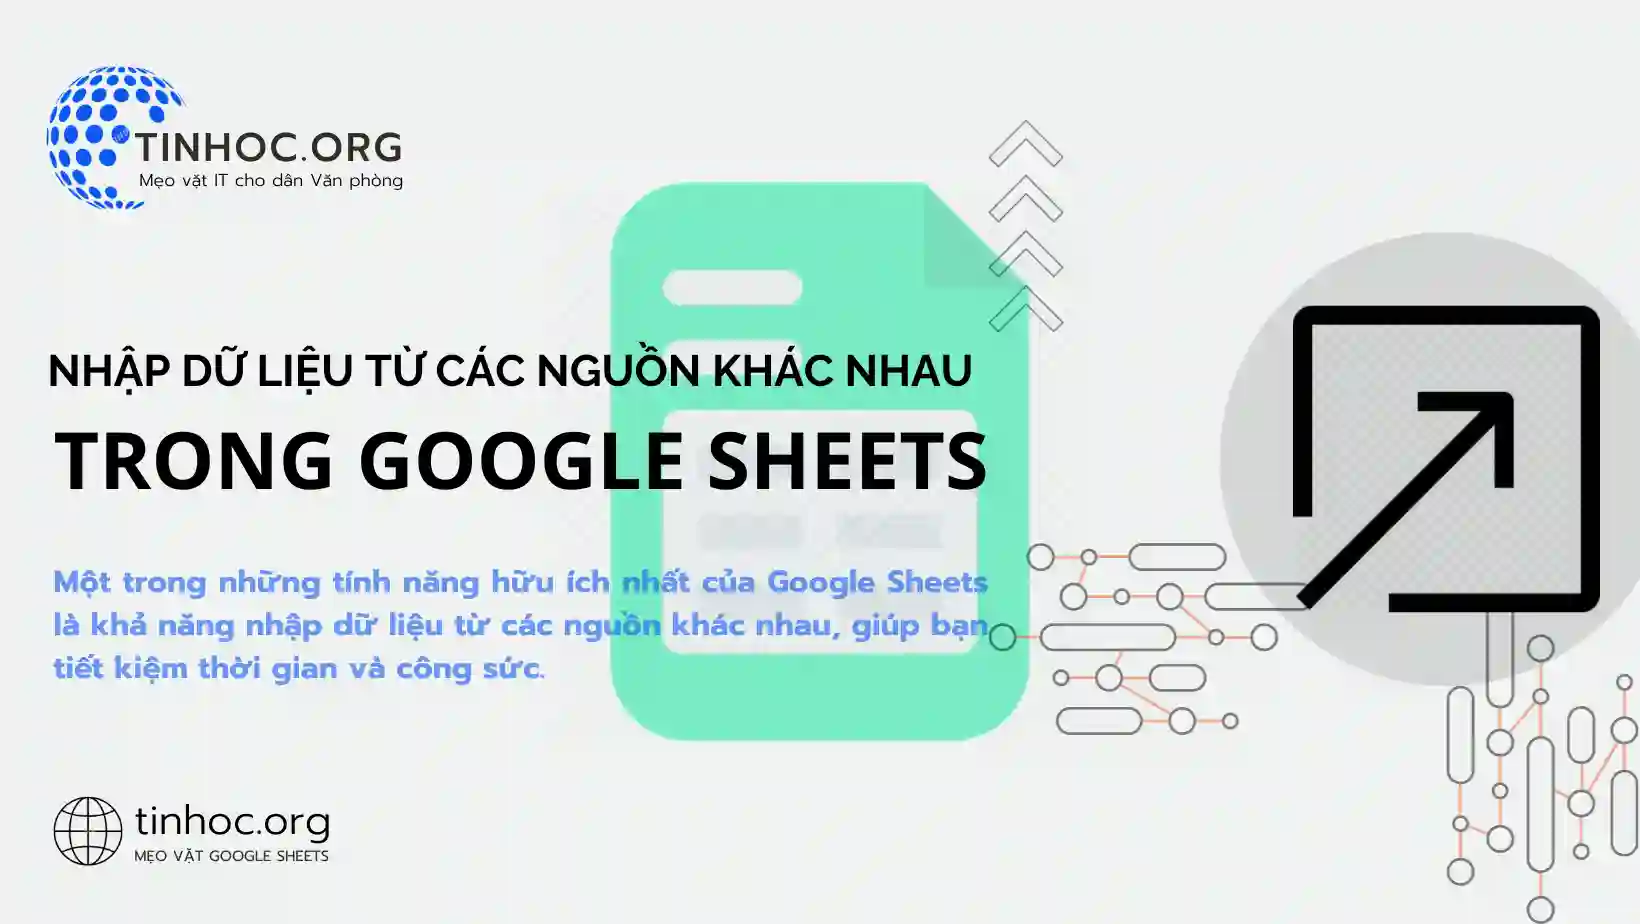 Một trong những tính năng hữu ích nhất của Google Sheets là khả năng nhập dữ liệu từ các nguồn khác nhau, giúp bạn tiết kiệm thời gian và công sức.